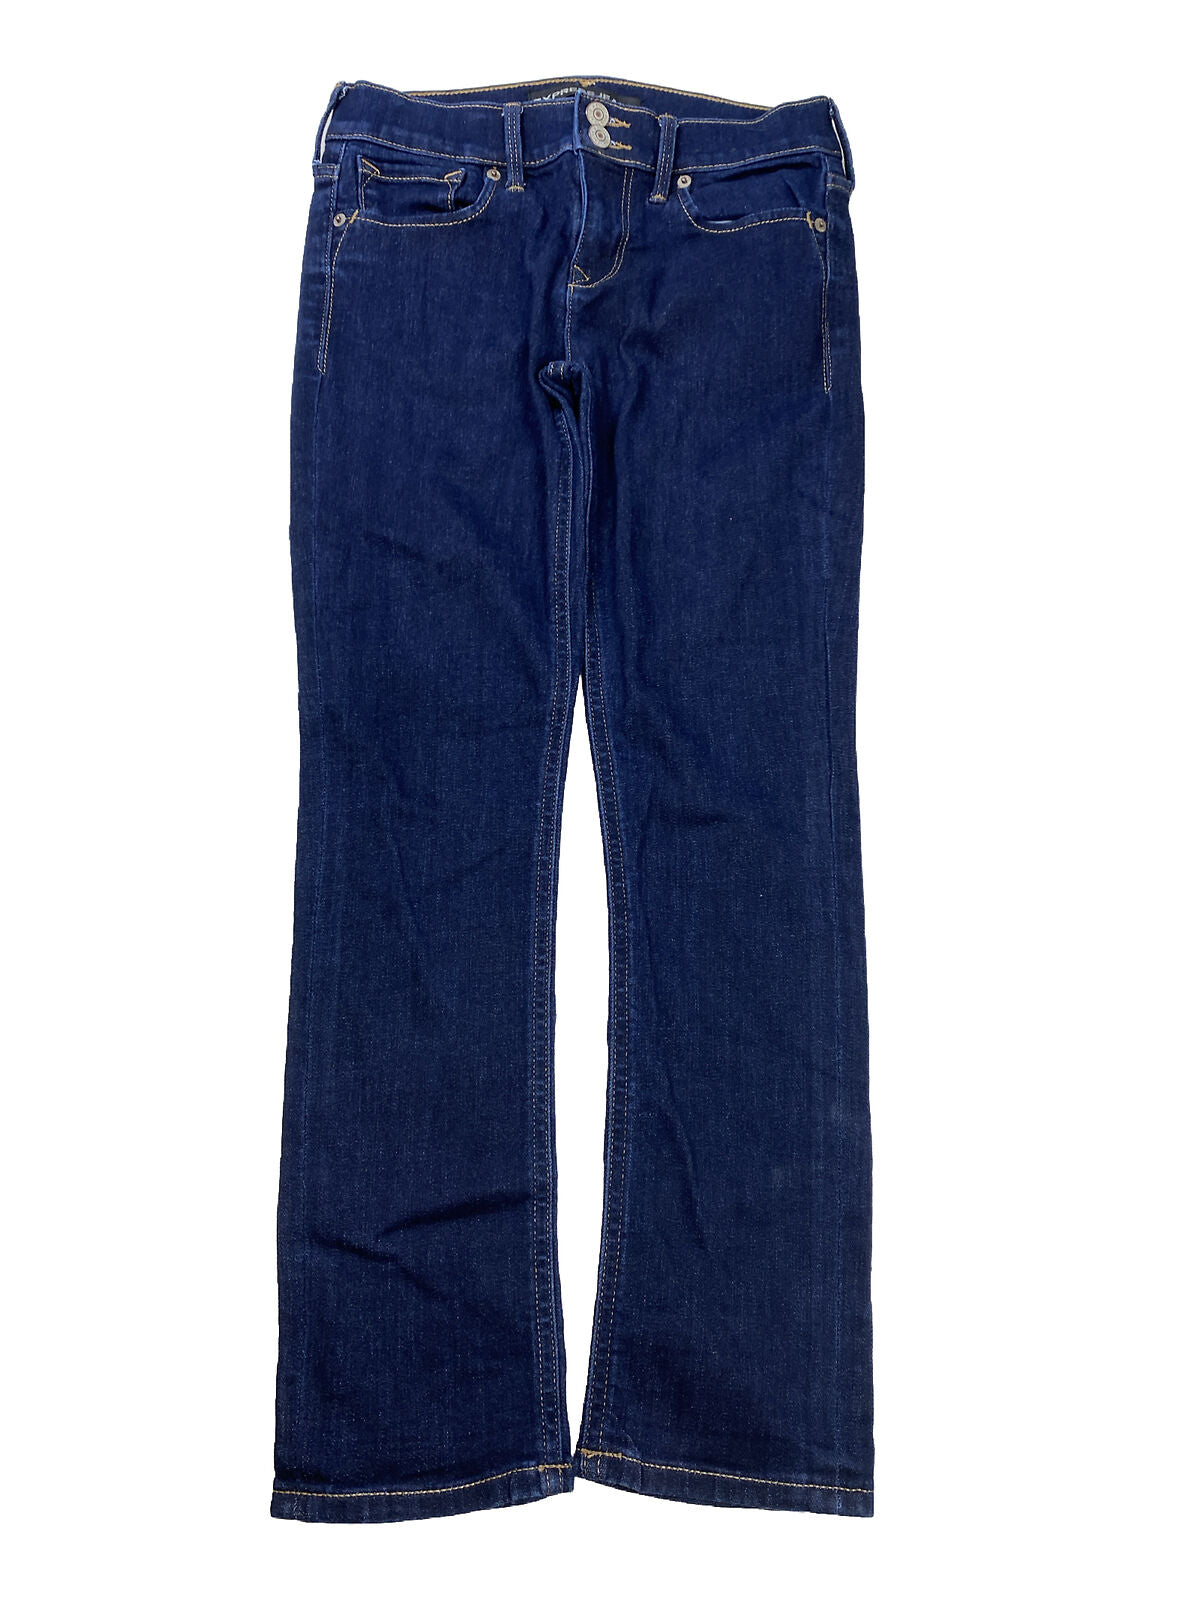 Express Jeans tipo legging recortados de talle medio y lavado oscuro para mujer - 2 R